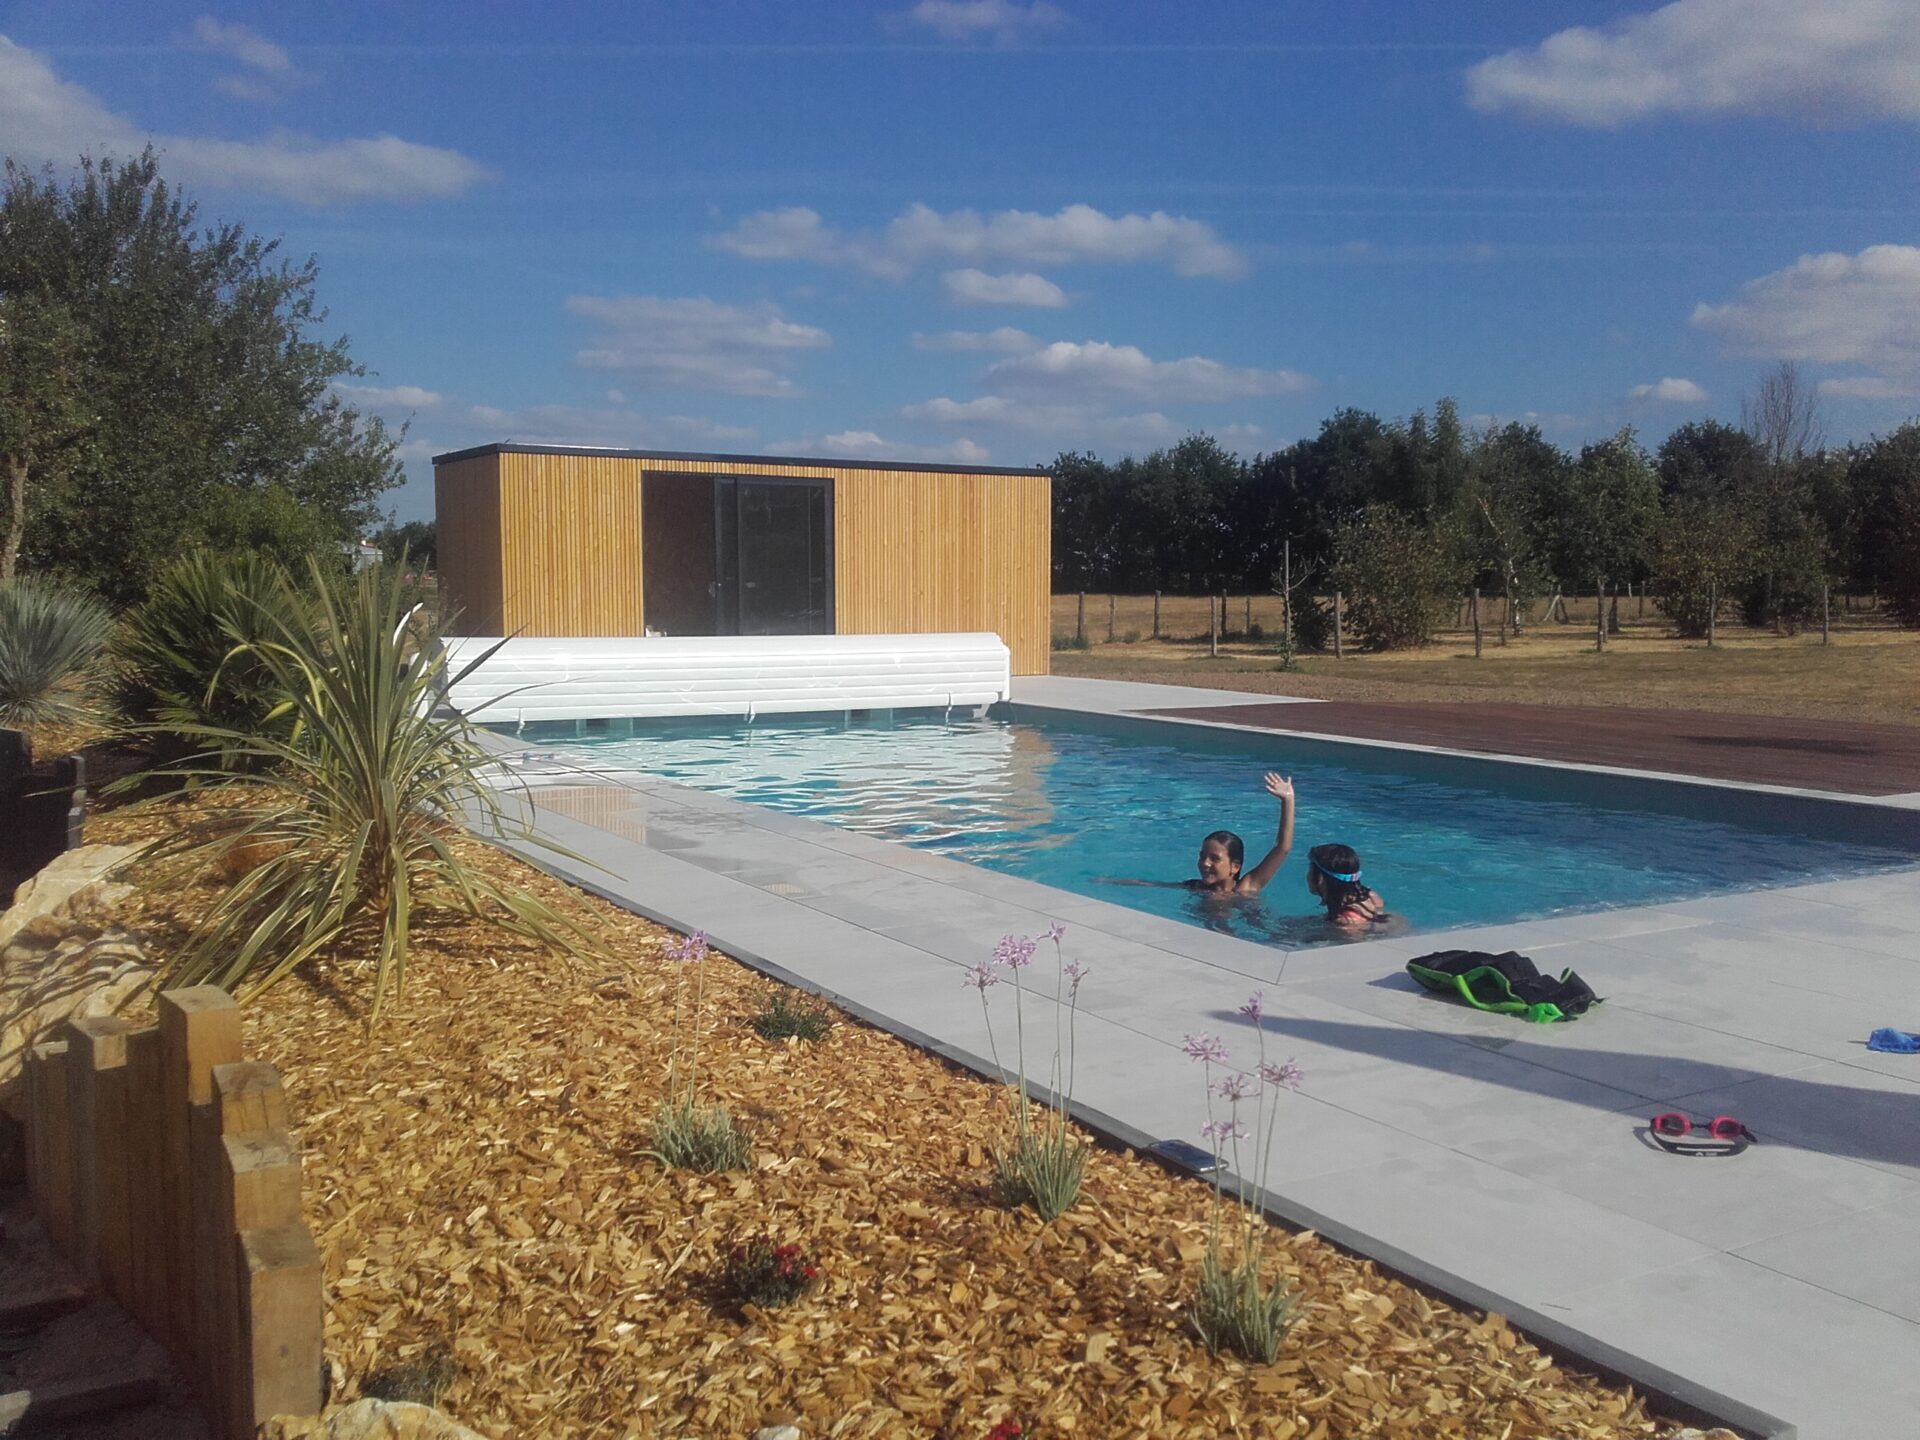 Terra Cime | Aménagement paysager autour d'une piscine | Le Marillais